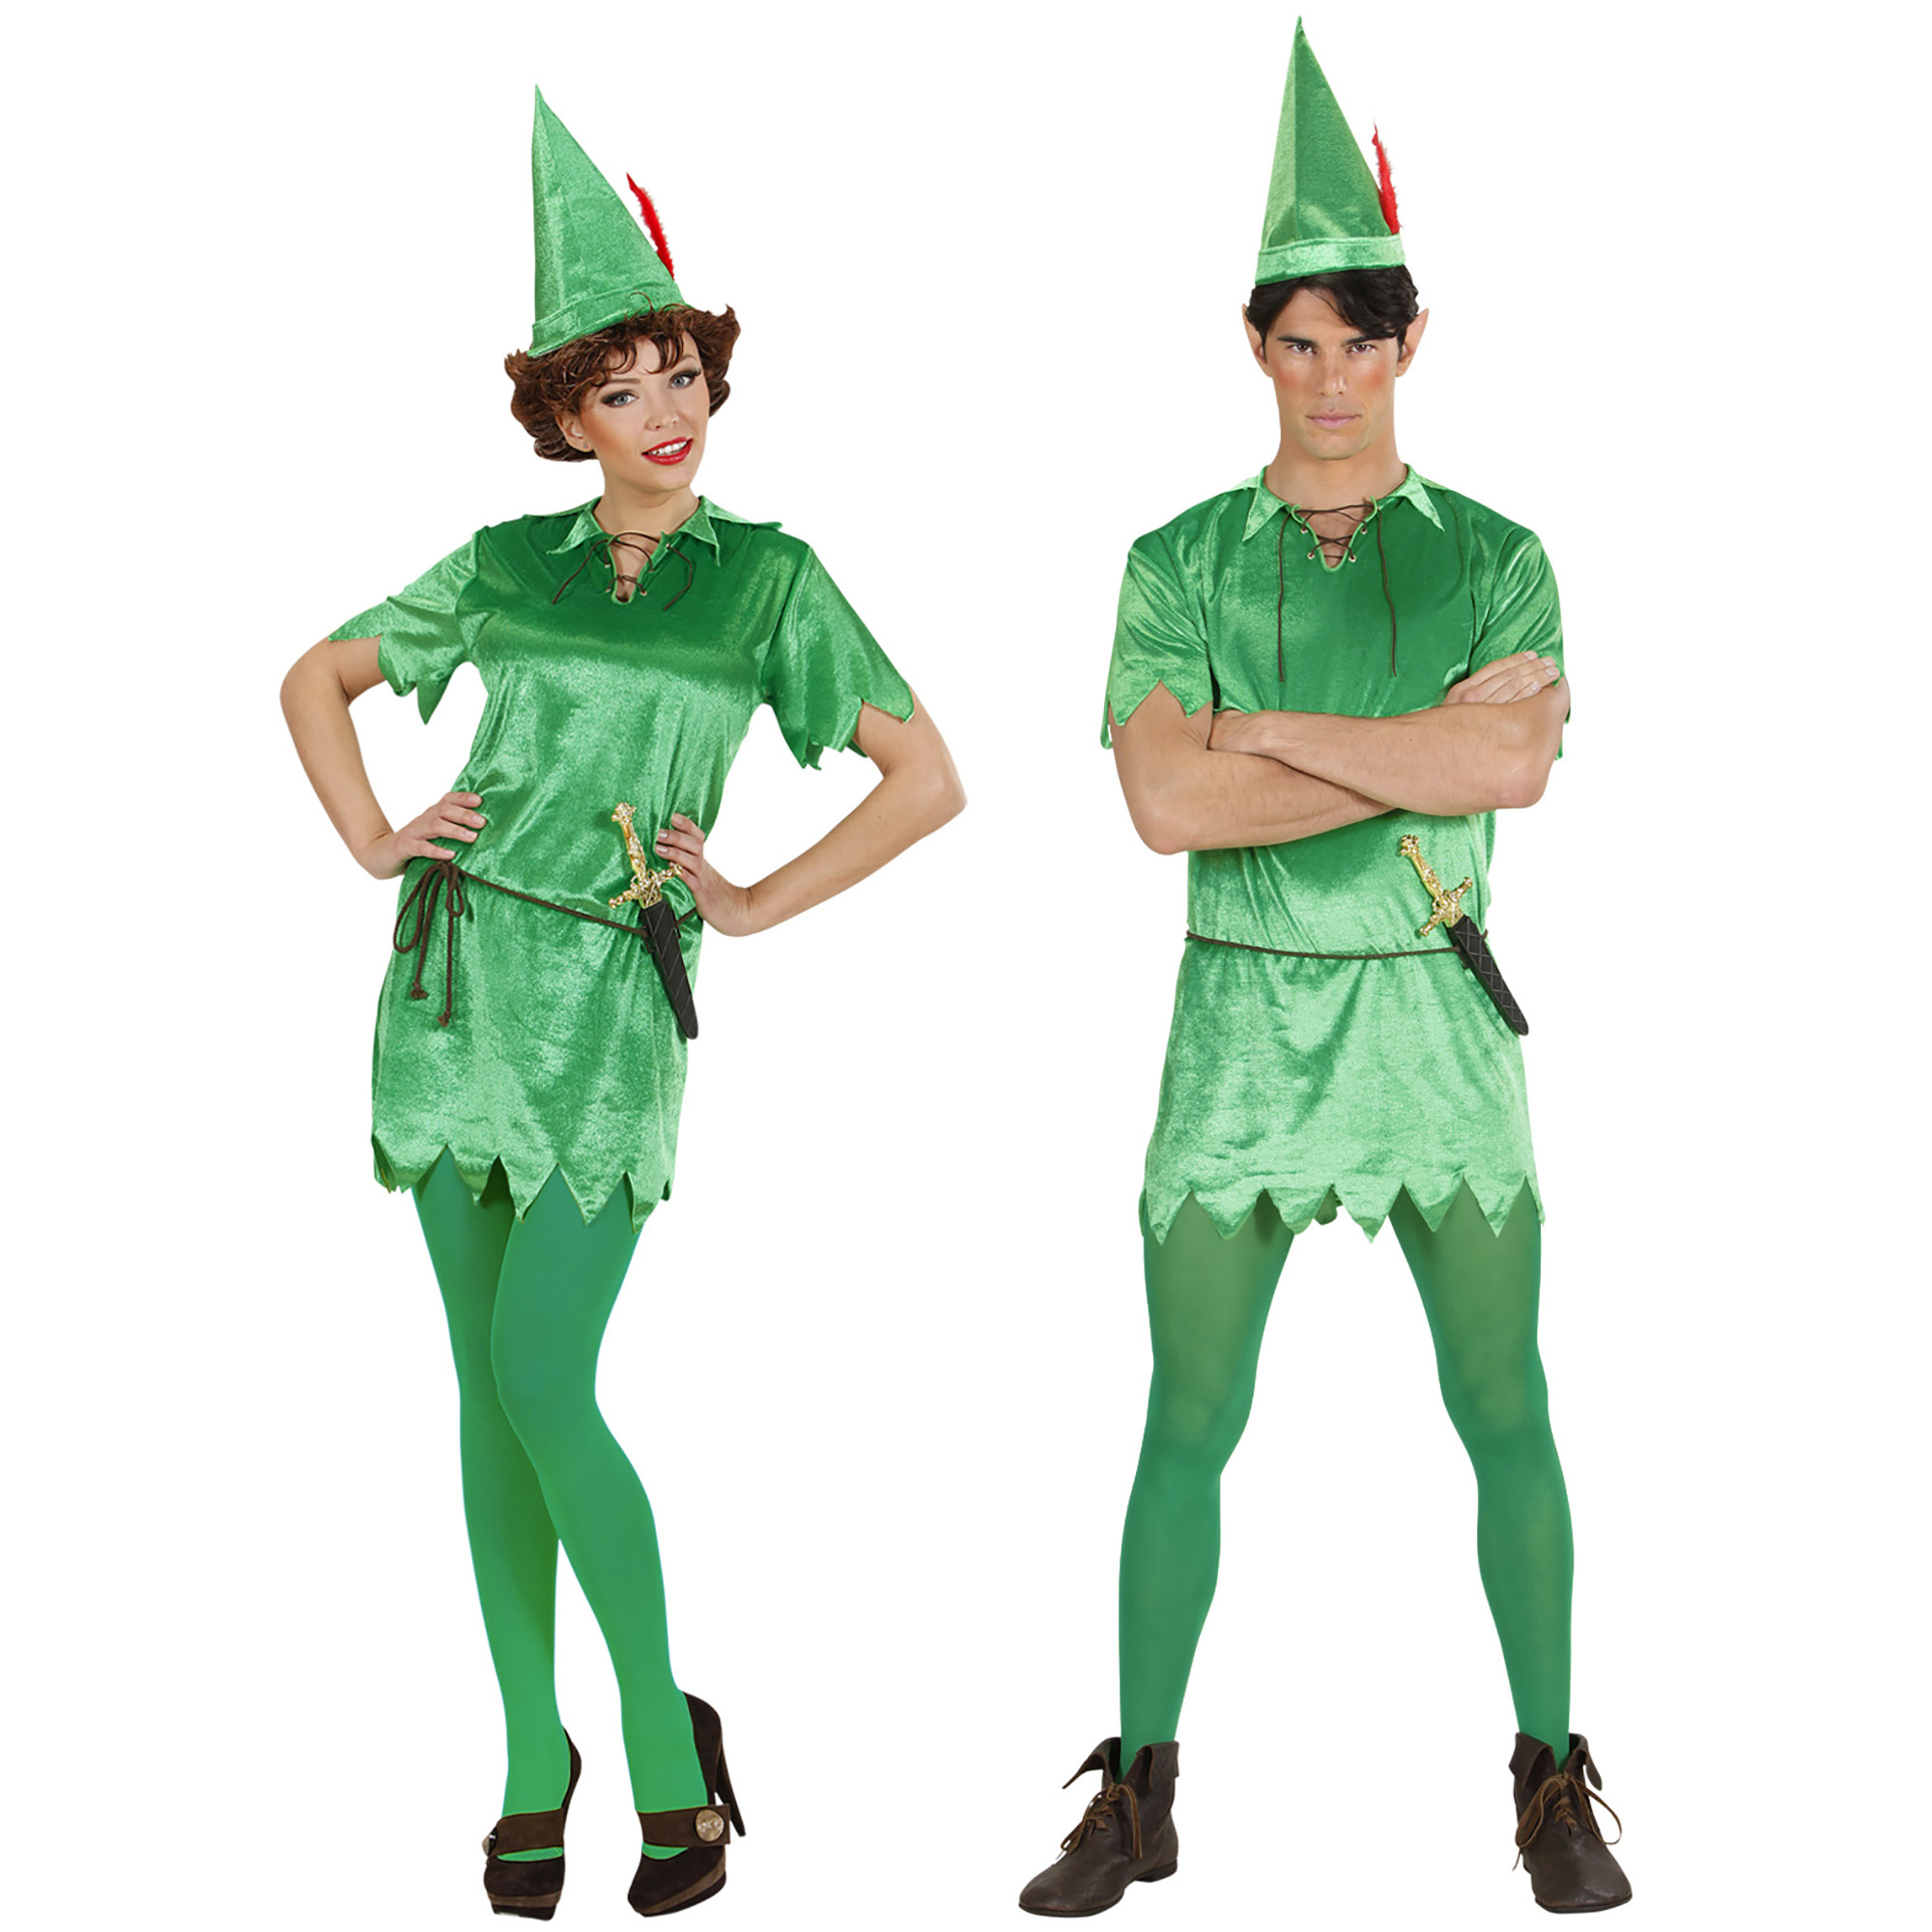 Onbepaald Vergevingsgezind Registratie Peter Pan kostuum online kopen? e-Carnavalskleding.nl - e-Carnavalskleding